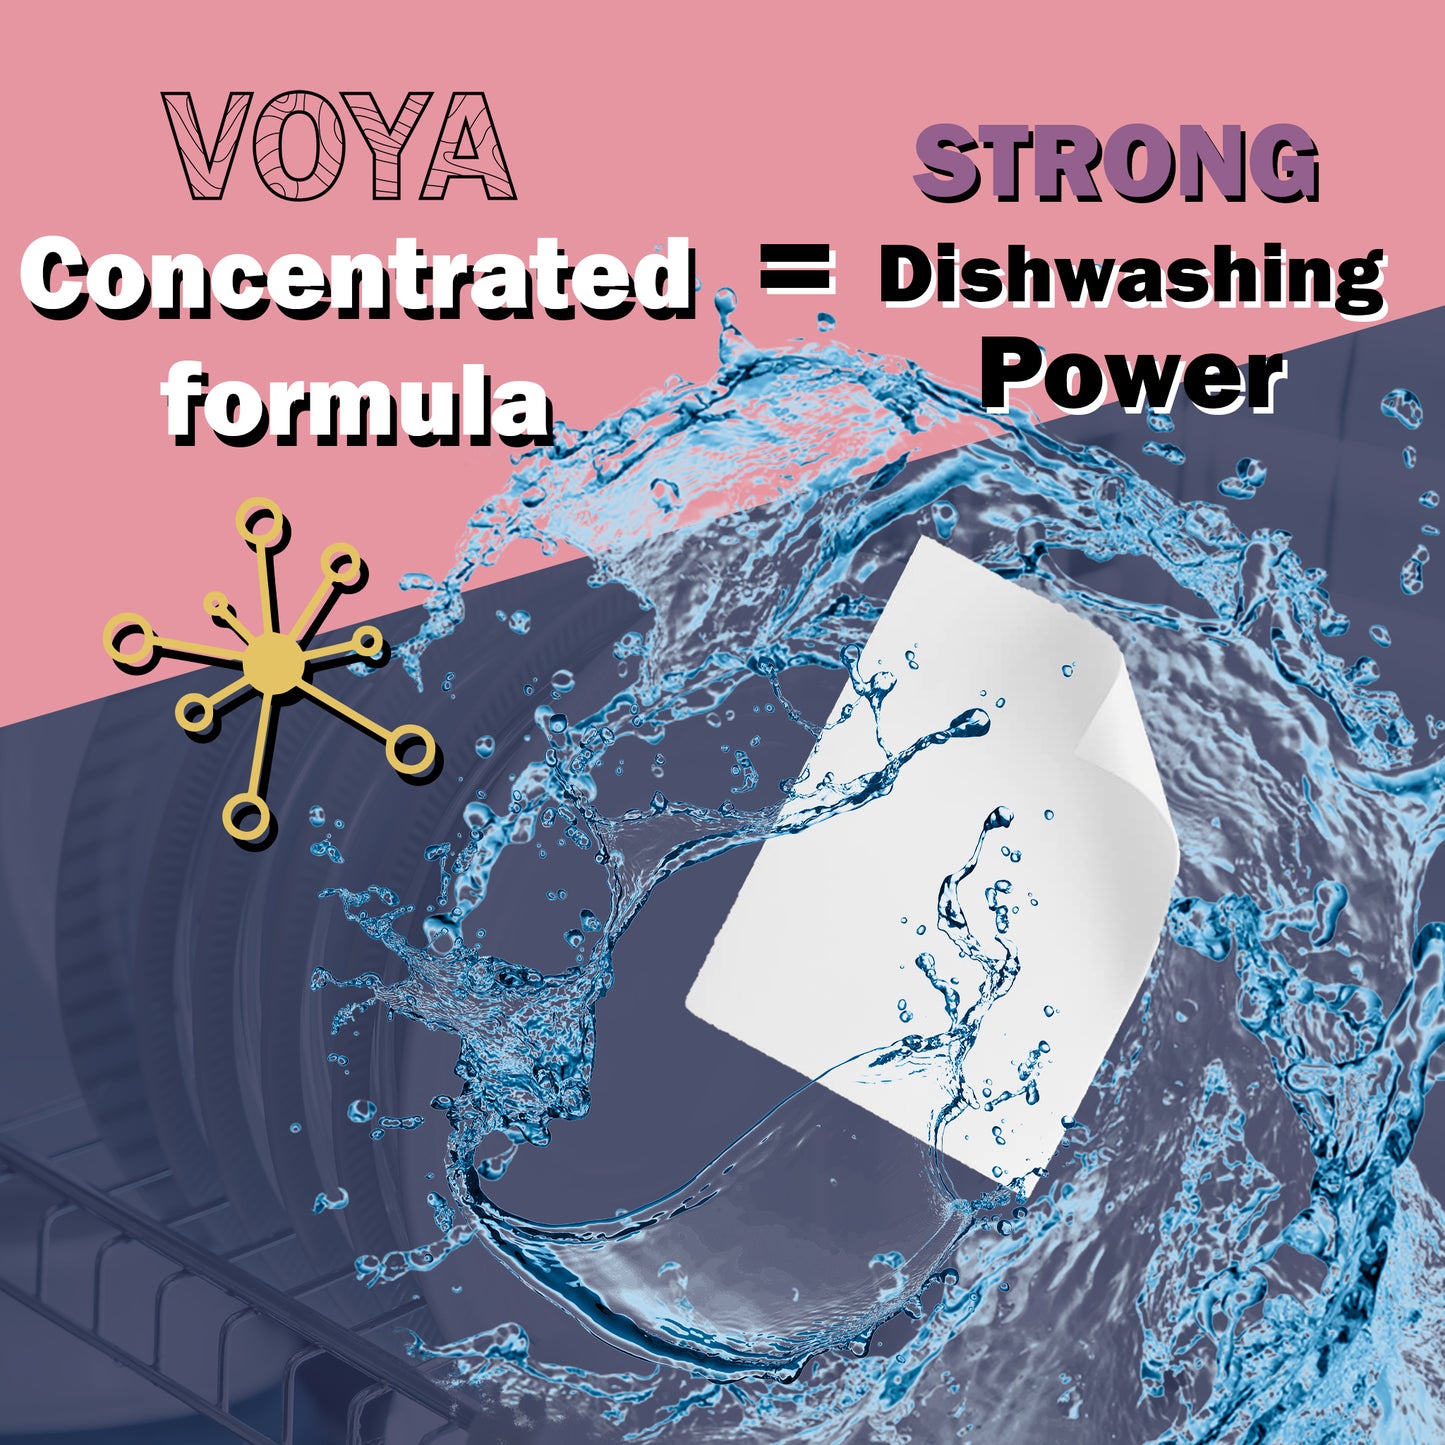 VOYA Dishwashing Strips